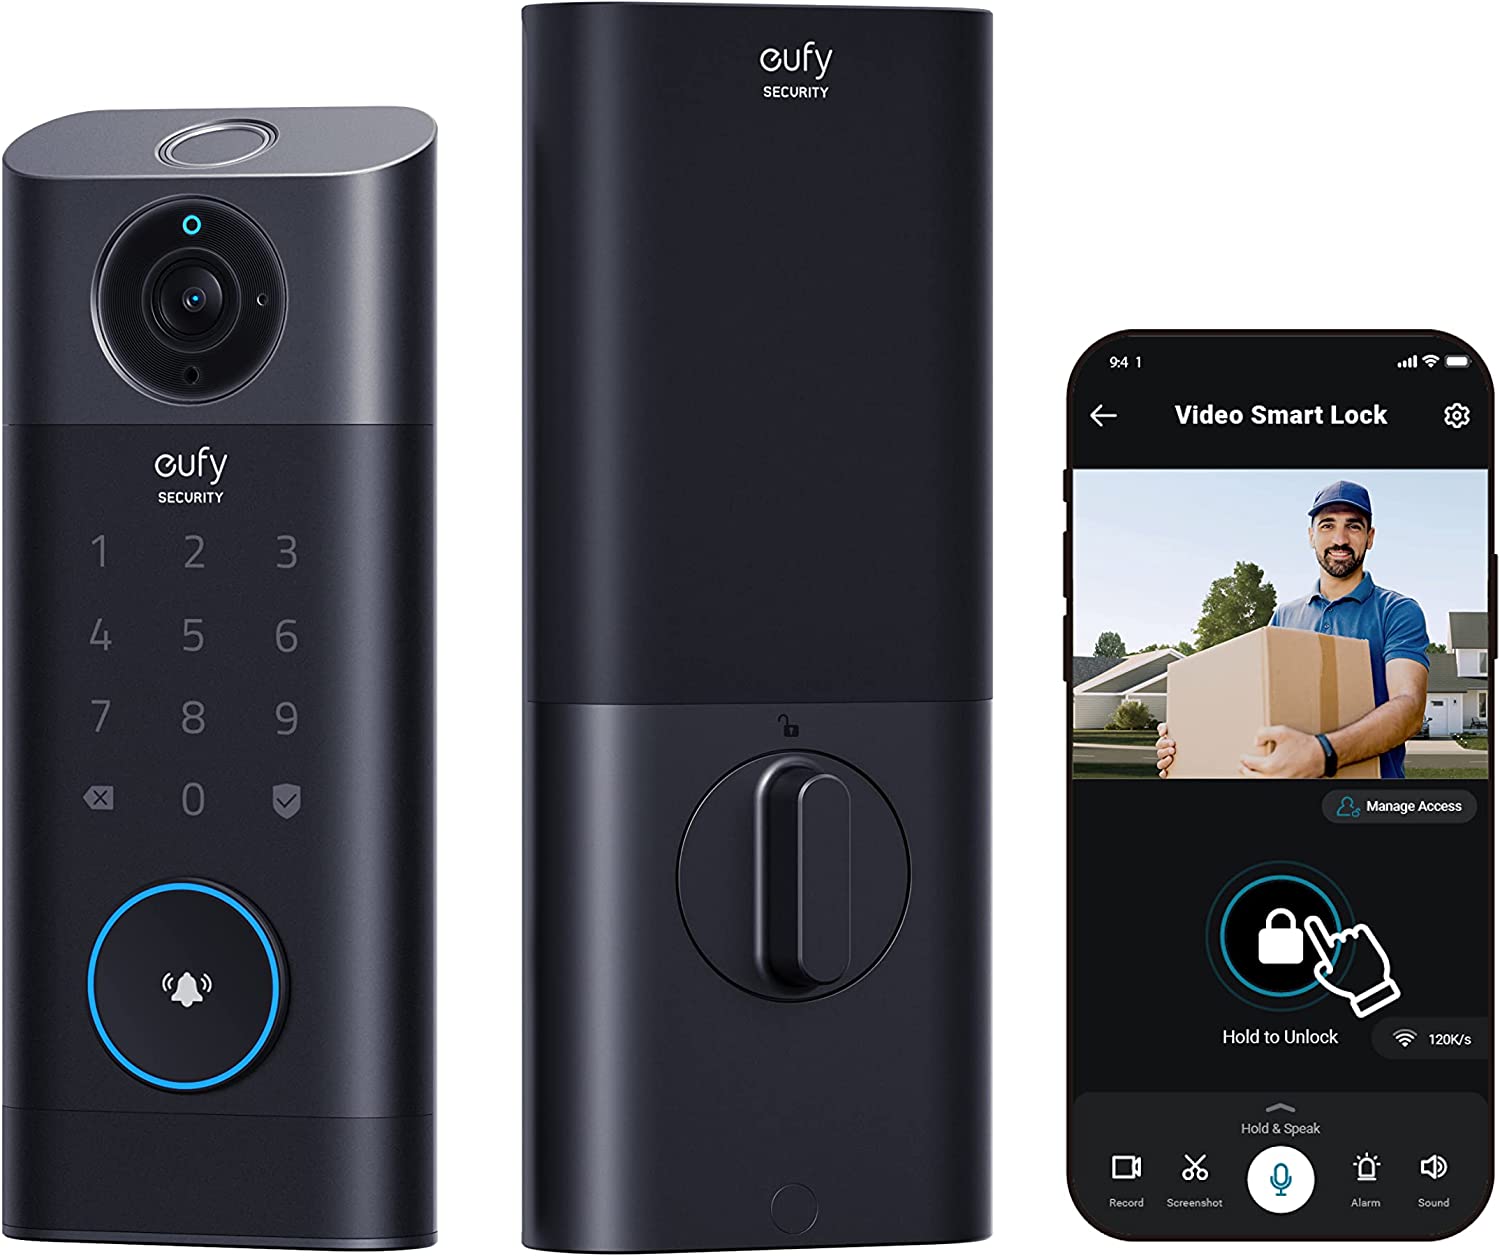 قفل در و زنگ ویدیوی هوشمند مدل eufy security S330 3-in-1 - ارسال ۱۰ الی ۱۵ روز کاری